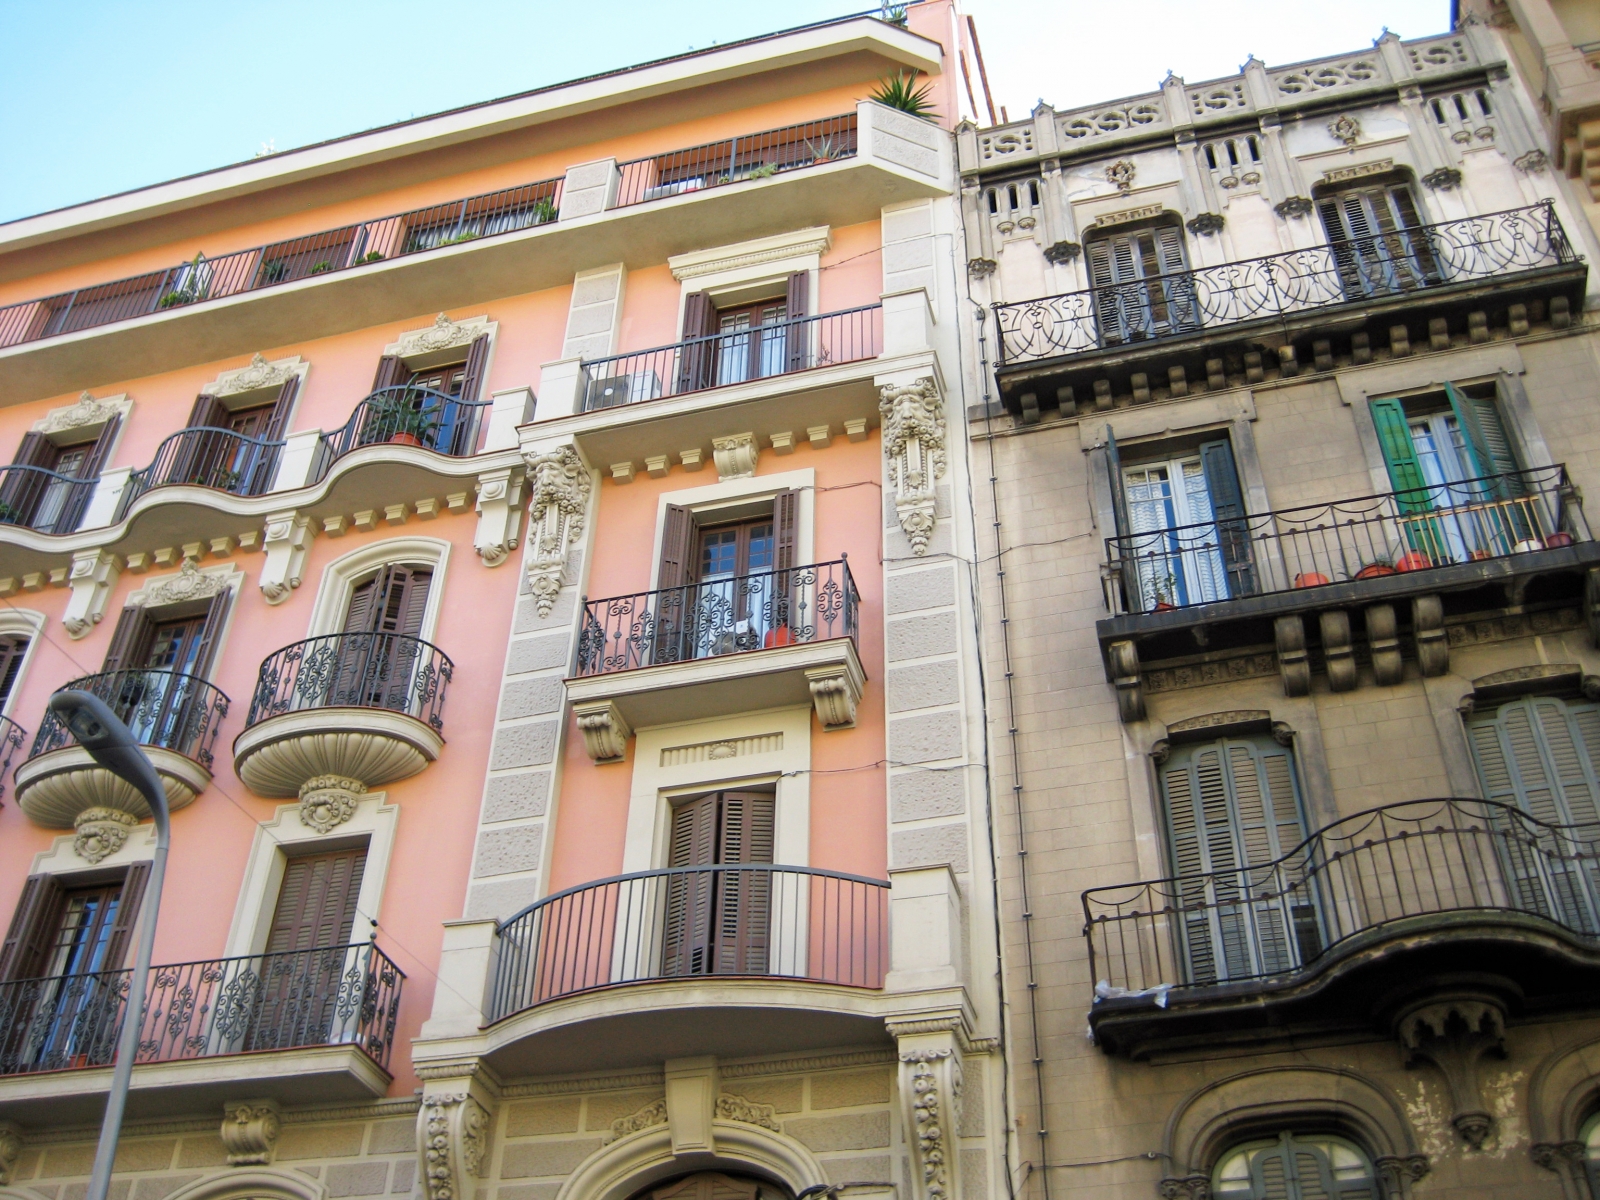 Ironwork balconies in Barcelona